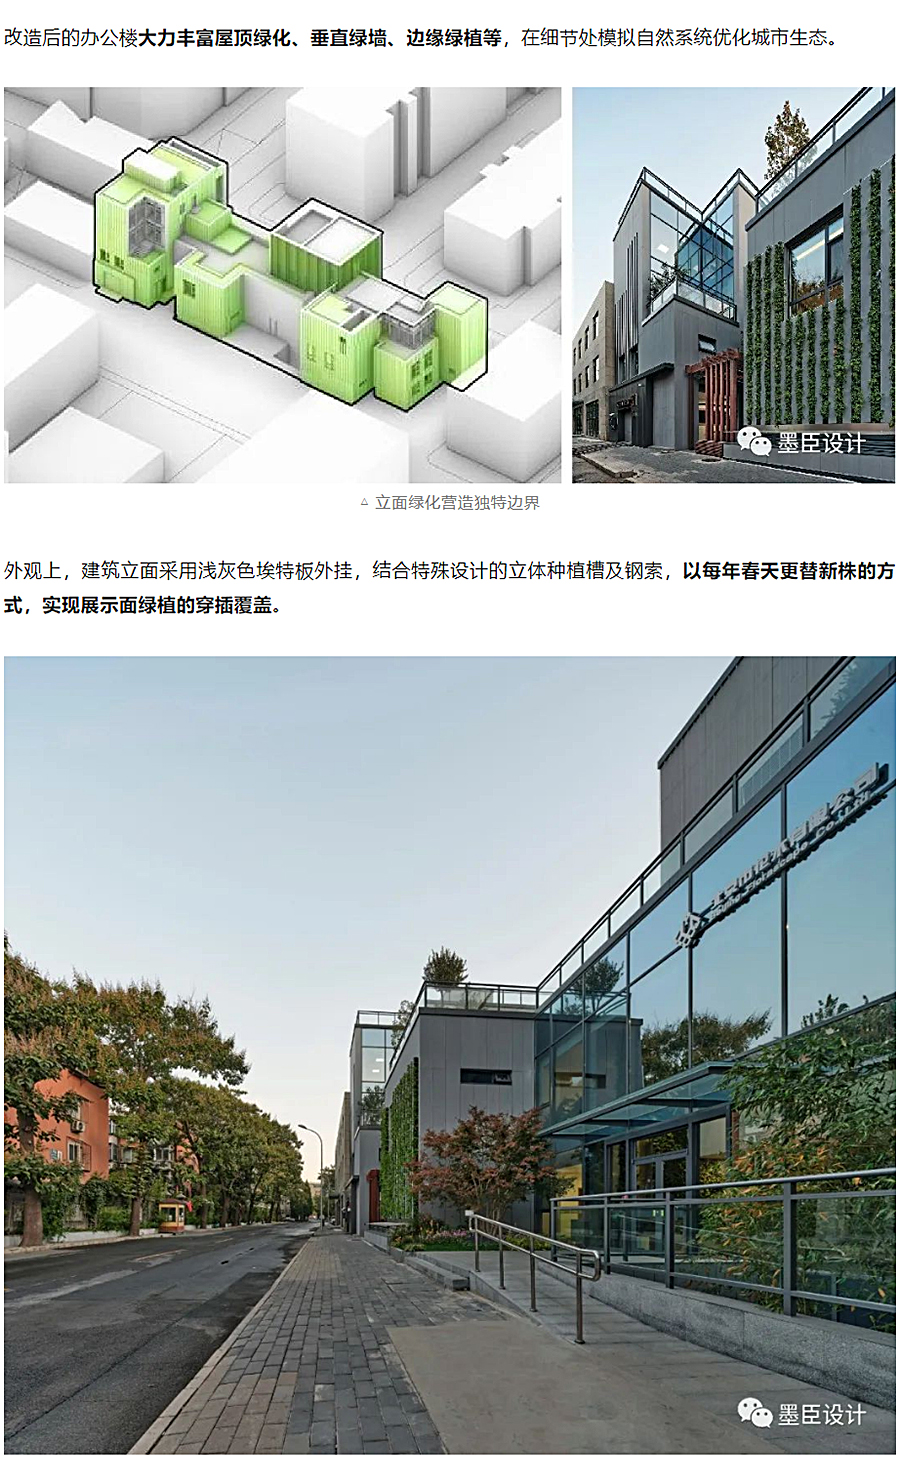 生态办公的游园序列-_-北京花木公司办公楼改造_0018_图层-19.jpg